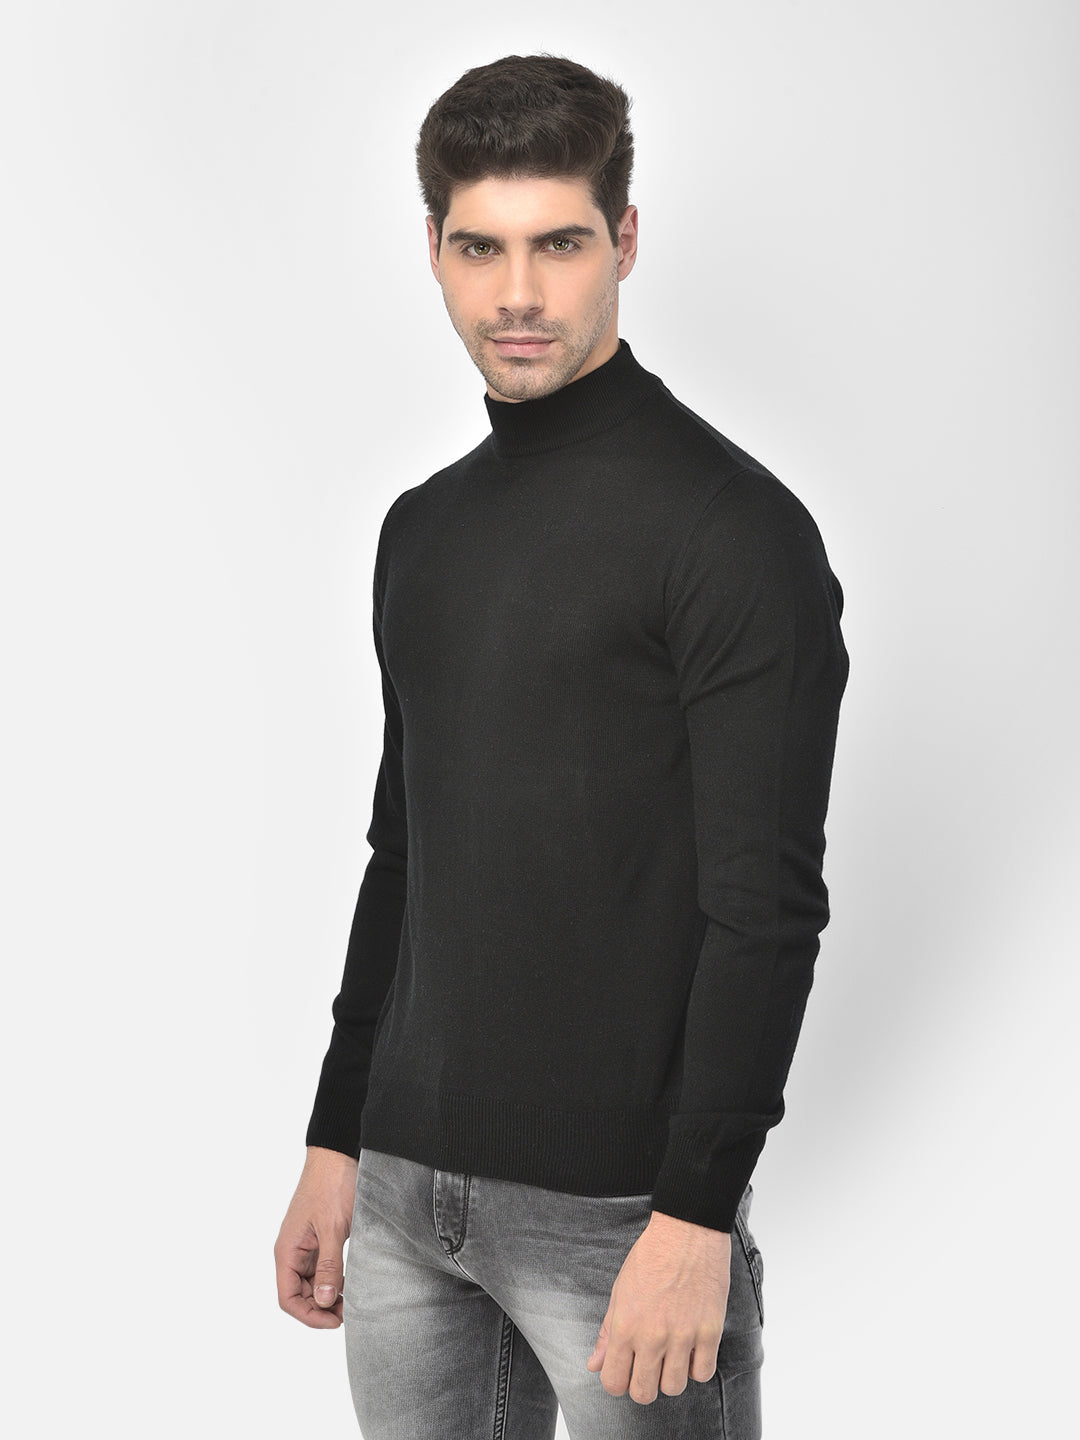 Black Mock Neck Sweater - Men Sweaters